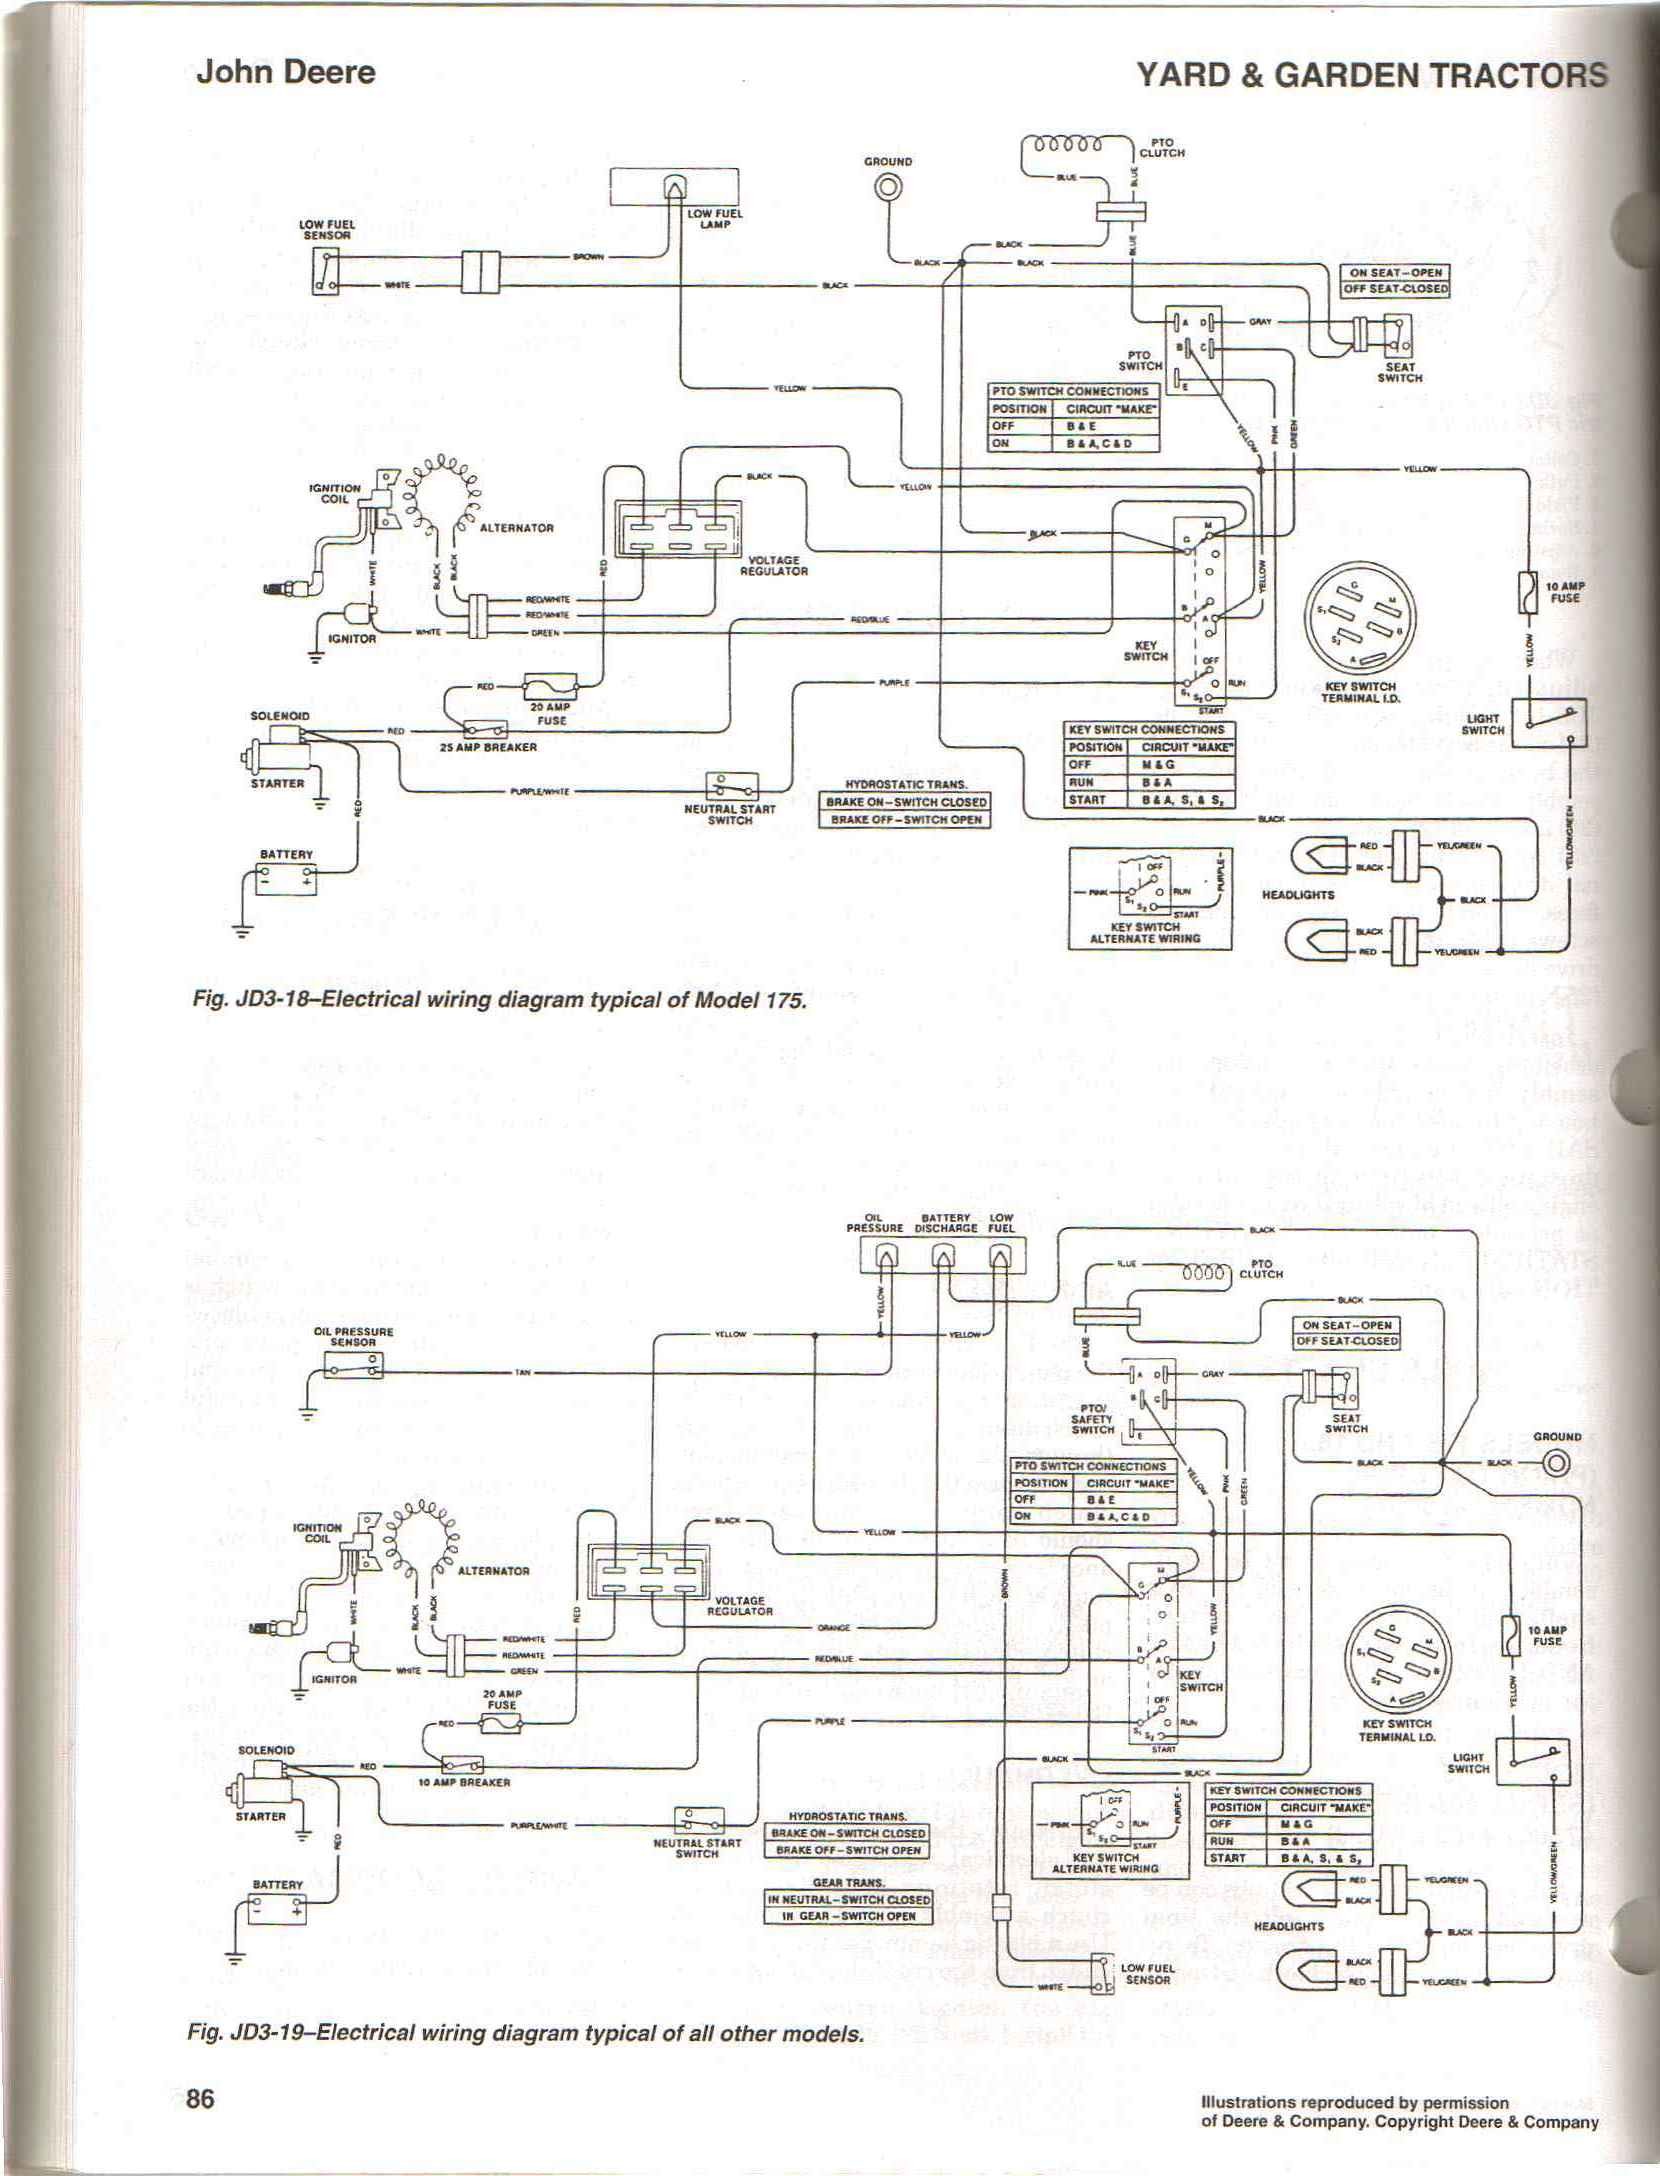 John Deere Gator Wiring Diagram Amazing John Deere Gator Wiring Diagram Everything You Need Of John Deere Gator Wiring Diagram